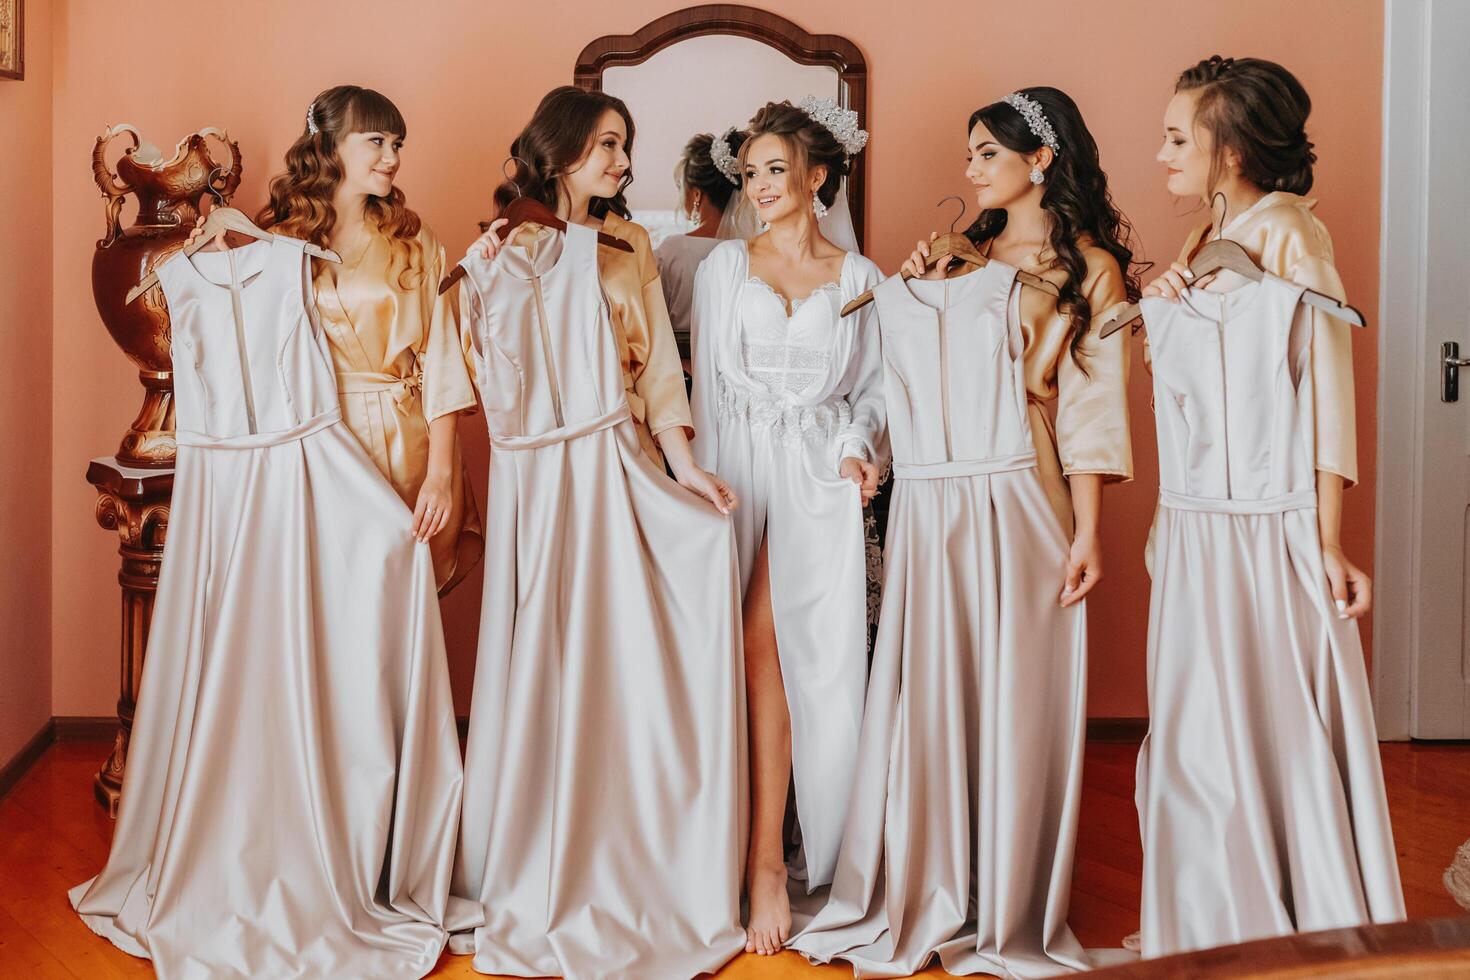 jong bruidsmeisjes in zijde Jurken tonen uit hun jurken in een hotel kamer. mooi Dames vieren een vrijgezellin partij De volgende naar de bruid in themed pyjama. foto